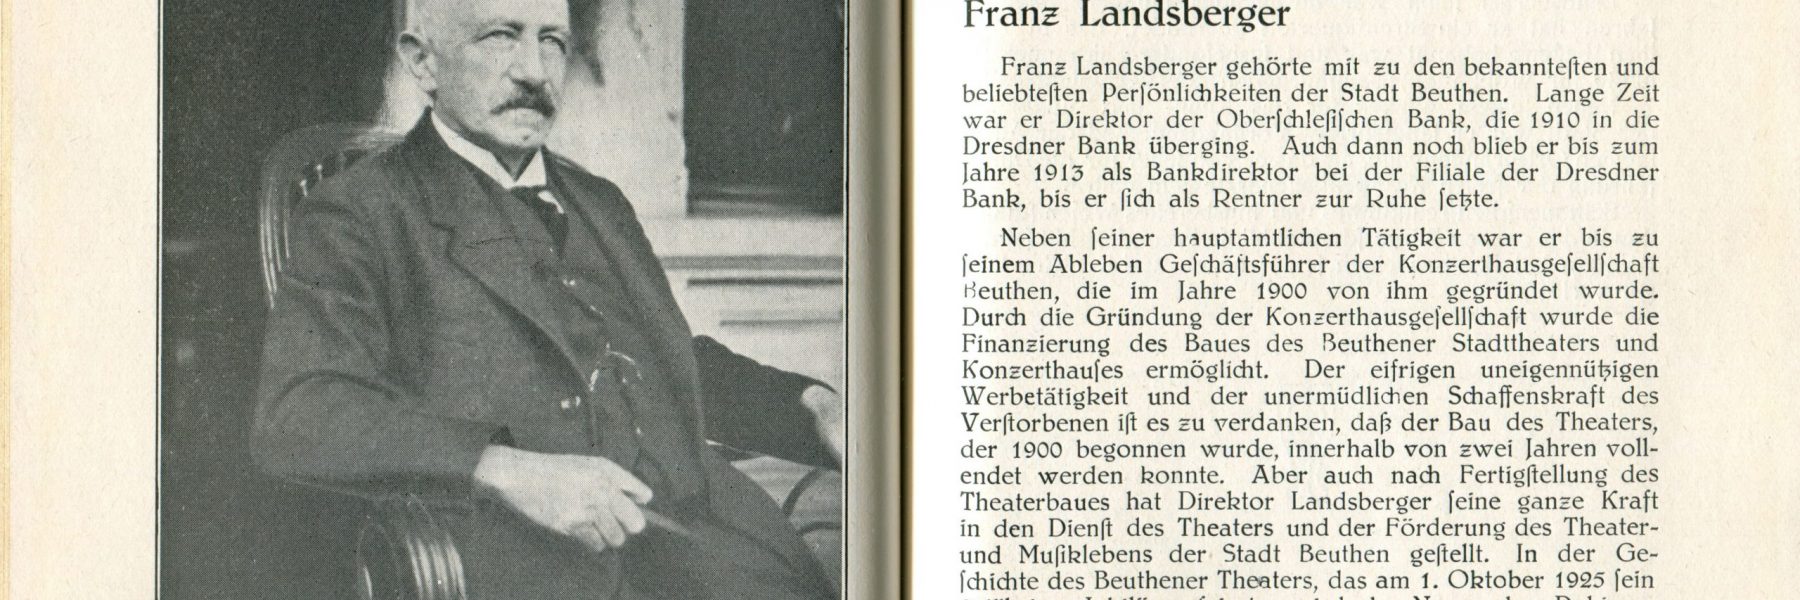 Franz Landsberger